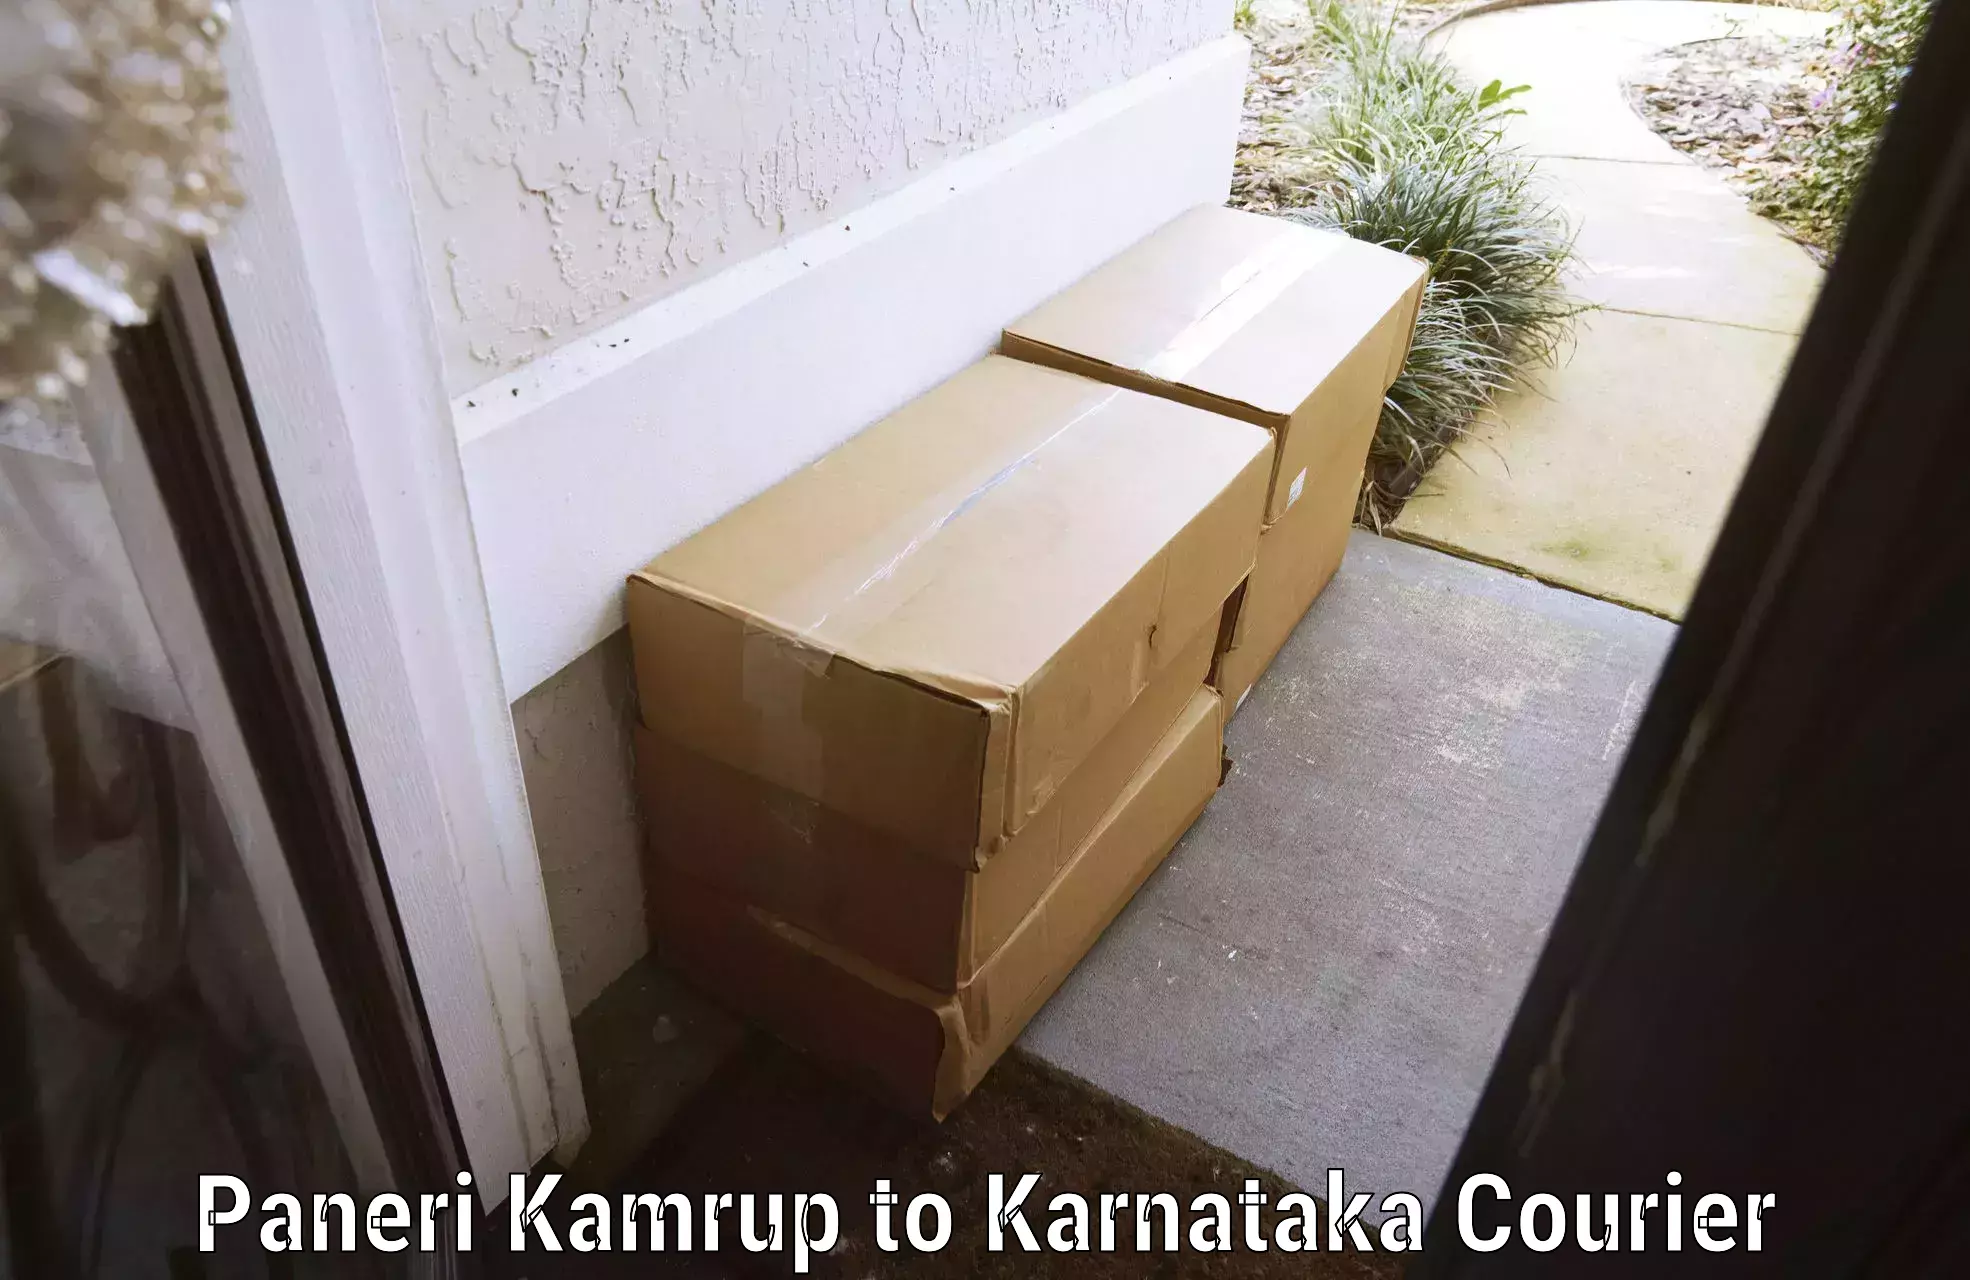 Luggage delivery providers Paneri Kamrup to Maramanahalli